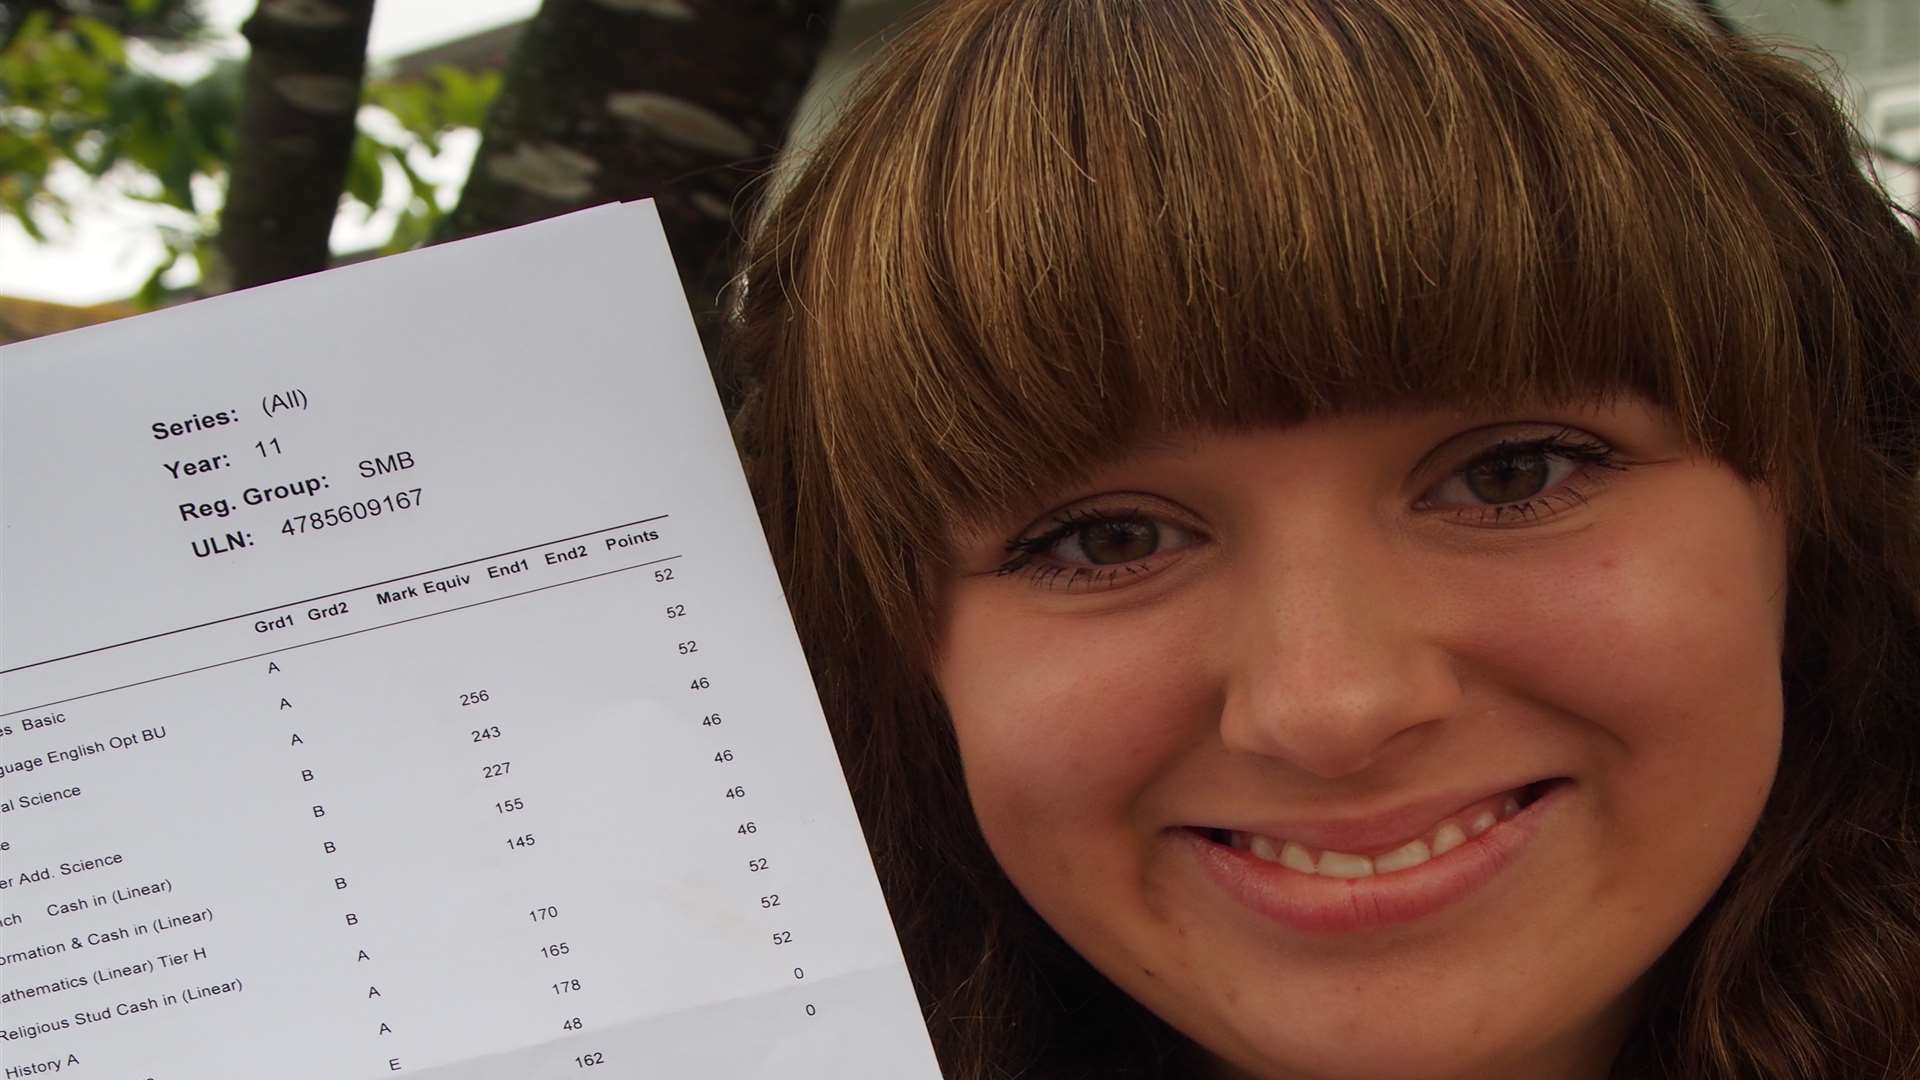 Brockhill pupil Millie Hoe - tears of joy over good GCSE results.